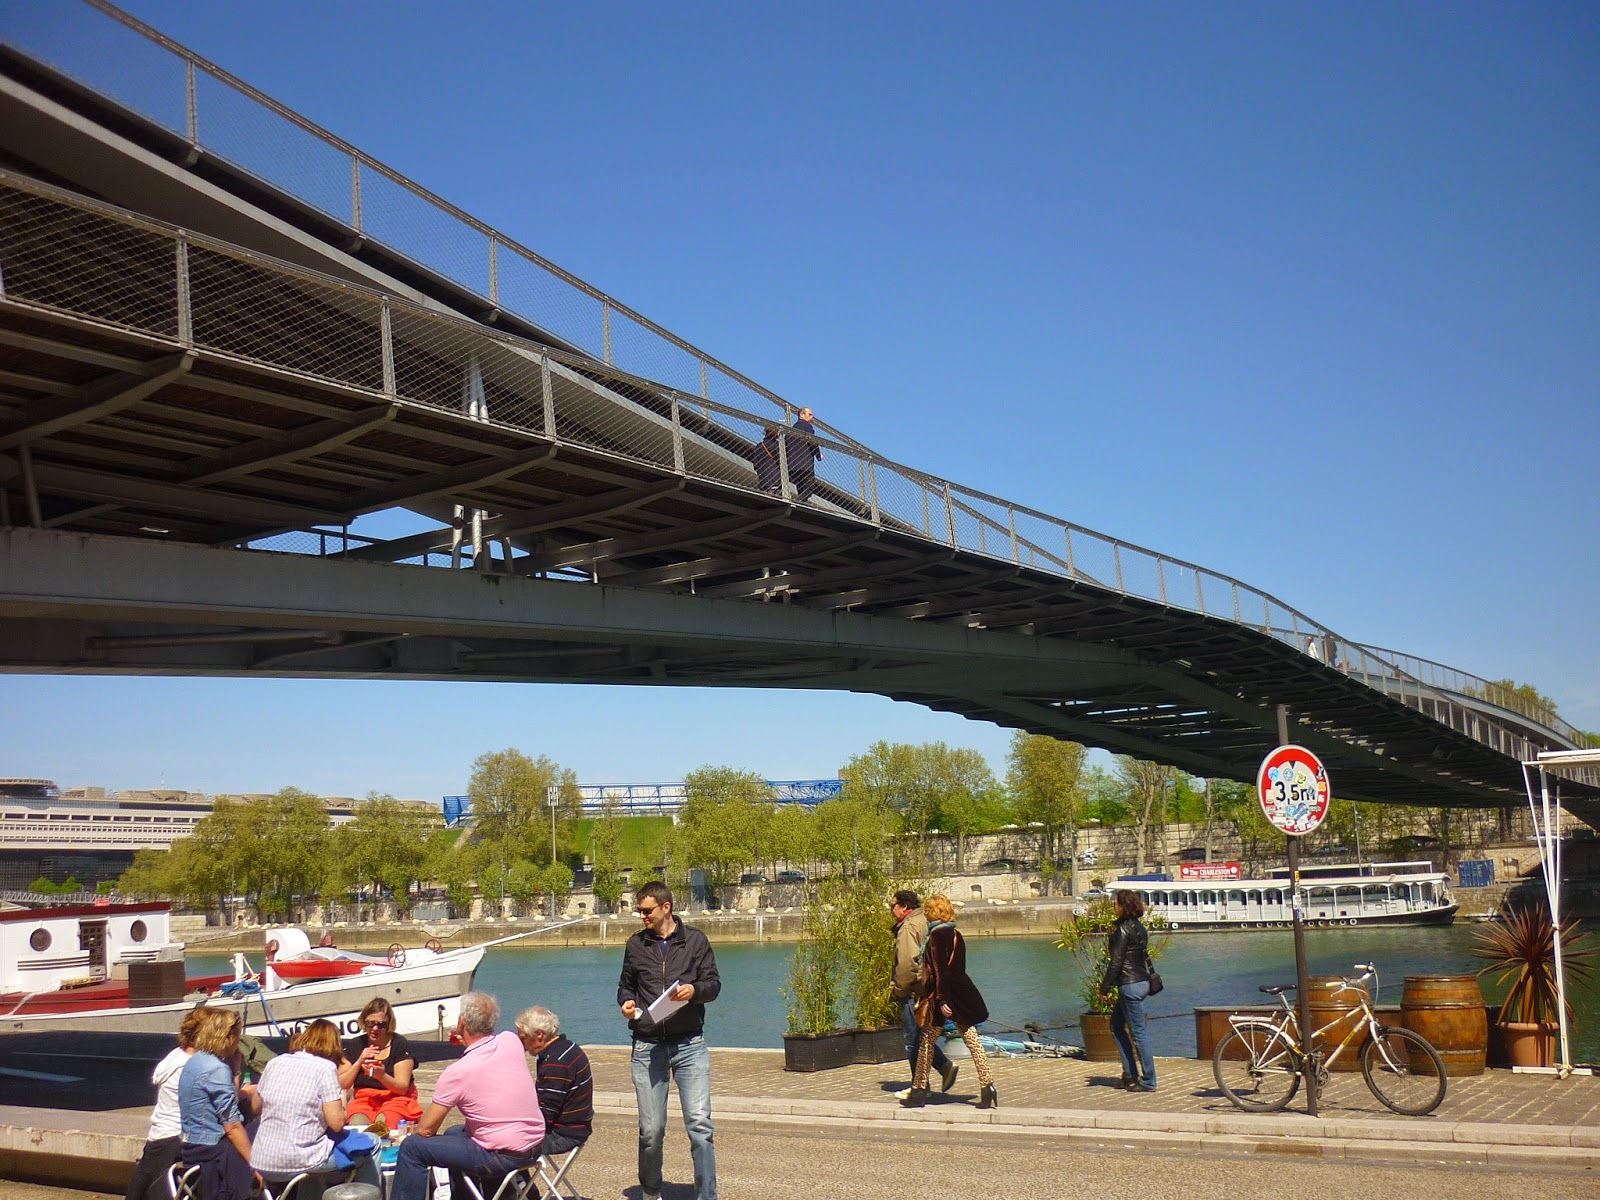 Aquarelle A Paris ﾊﾟﾘで水彩画 ｼﾓｰﾇ ﾄﾞ ﾎﾞｰｳﾞｫﾜｰﾙ橋 Le Pont De Simone De Beauvoir